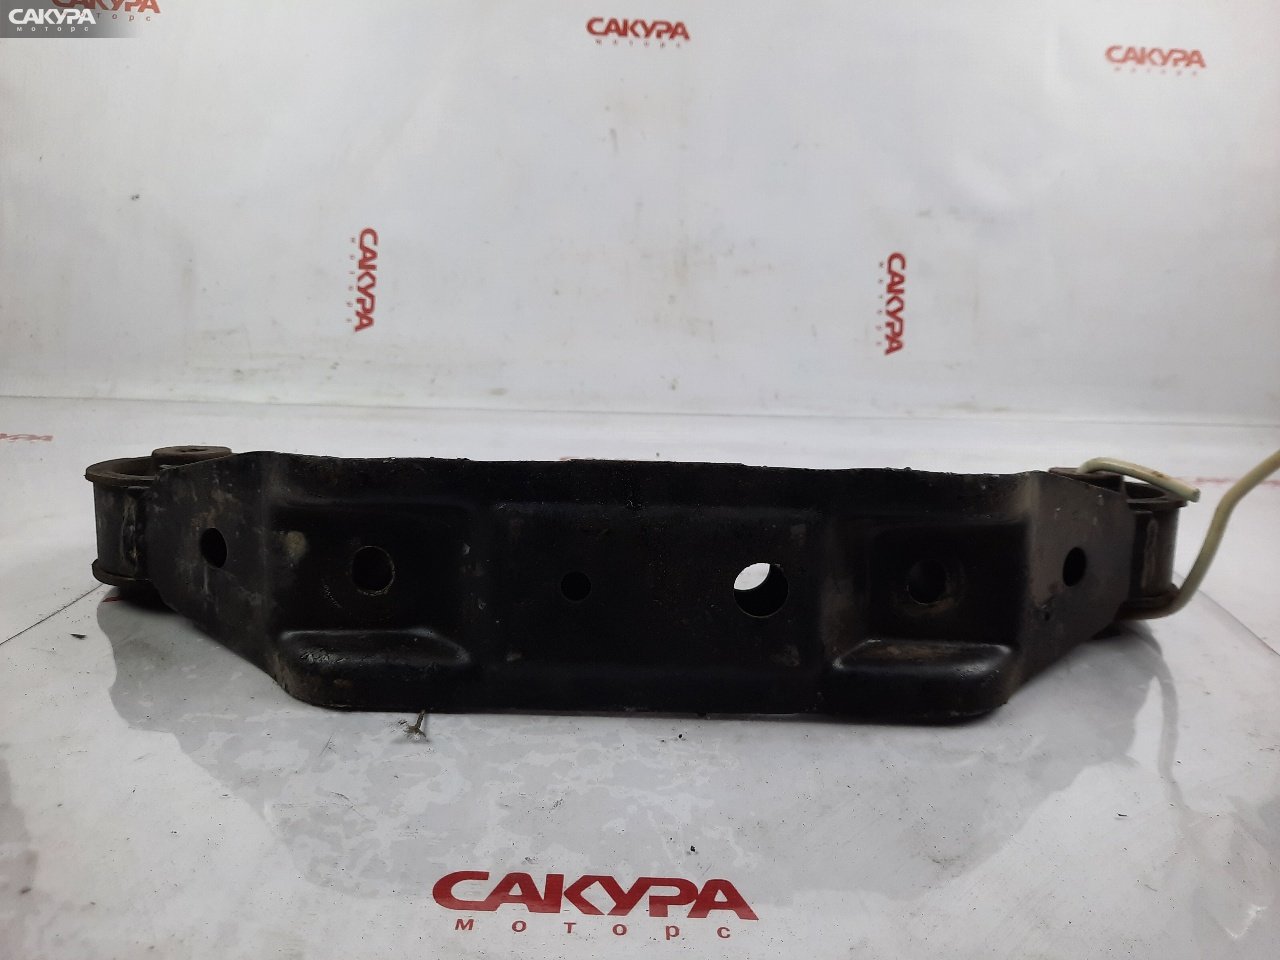 Подушка двигателя Toyota Carina ST215 3S-FE: купить в Сакура Красноярск.